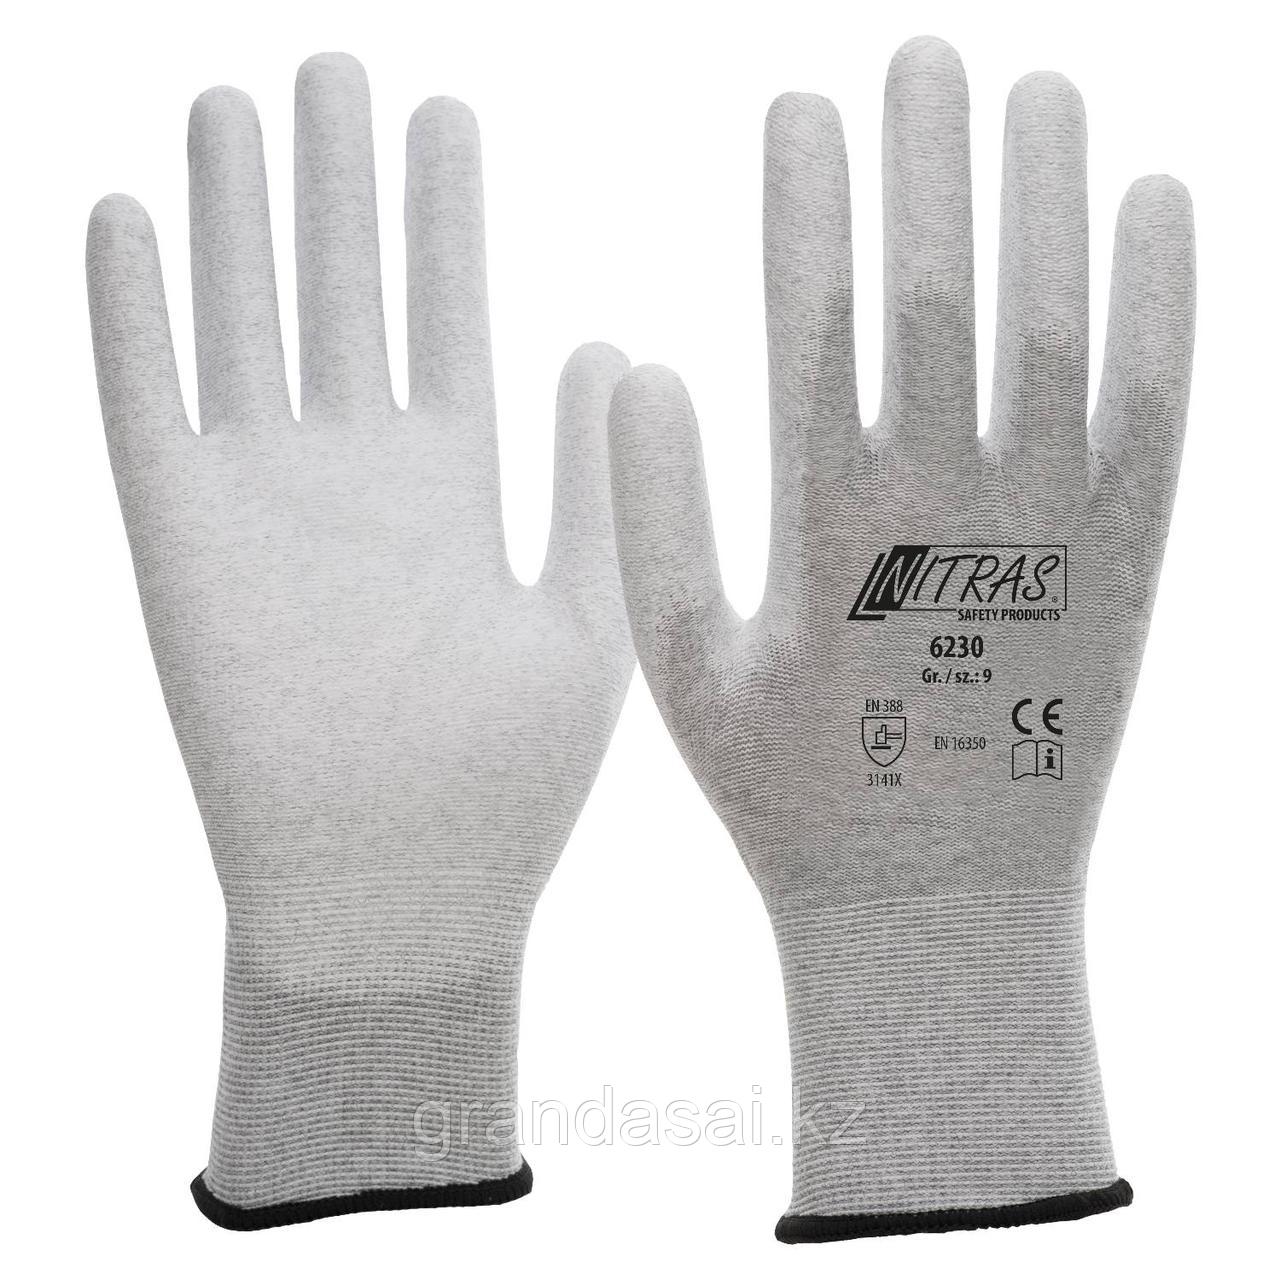 NITRAS 6230, антистатические нейлоновые трикотажные перчатки, покрытые белым полиуретаном